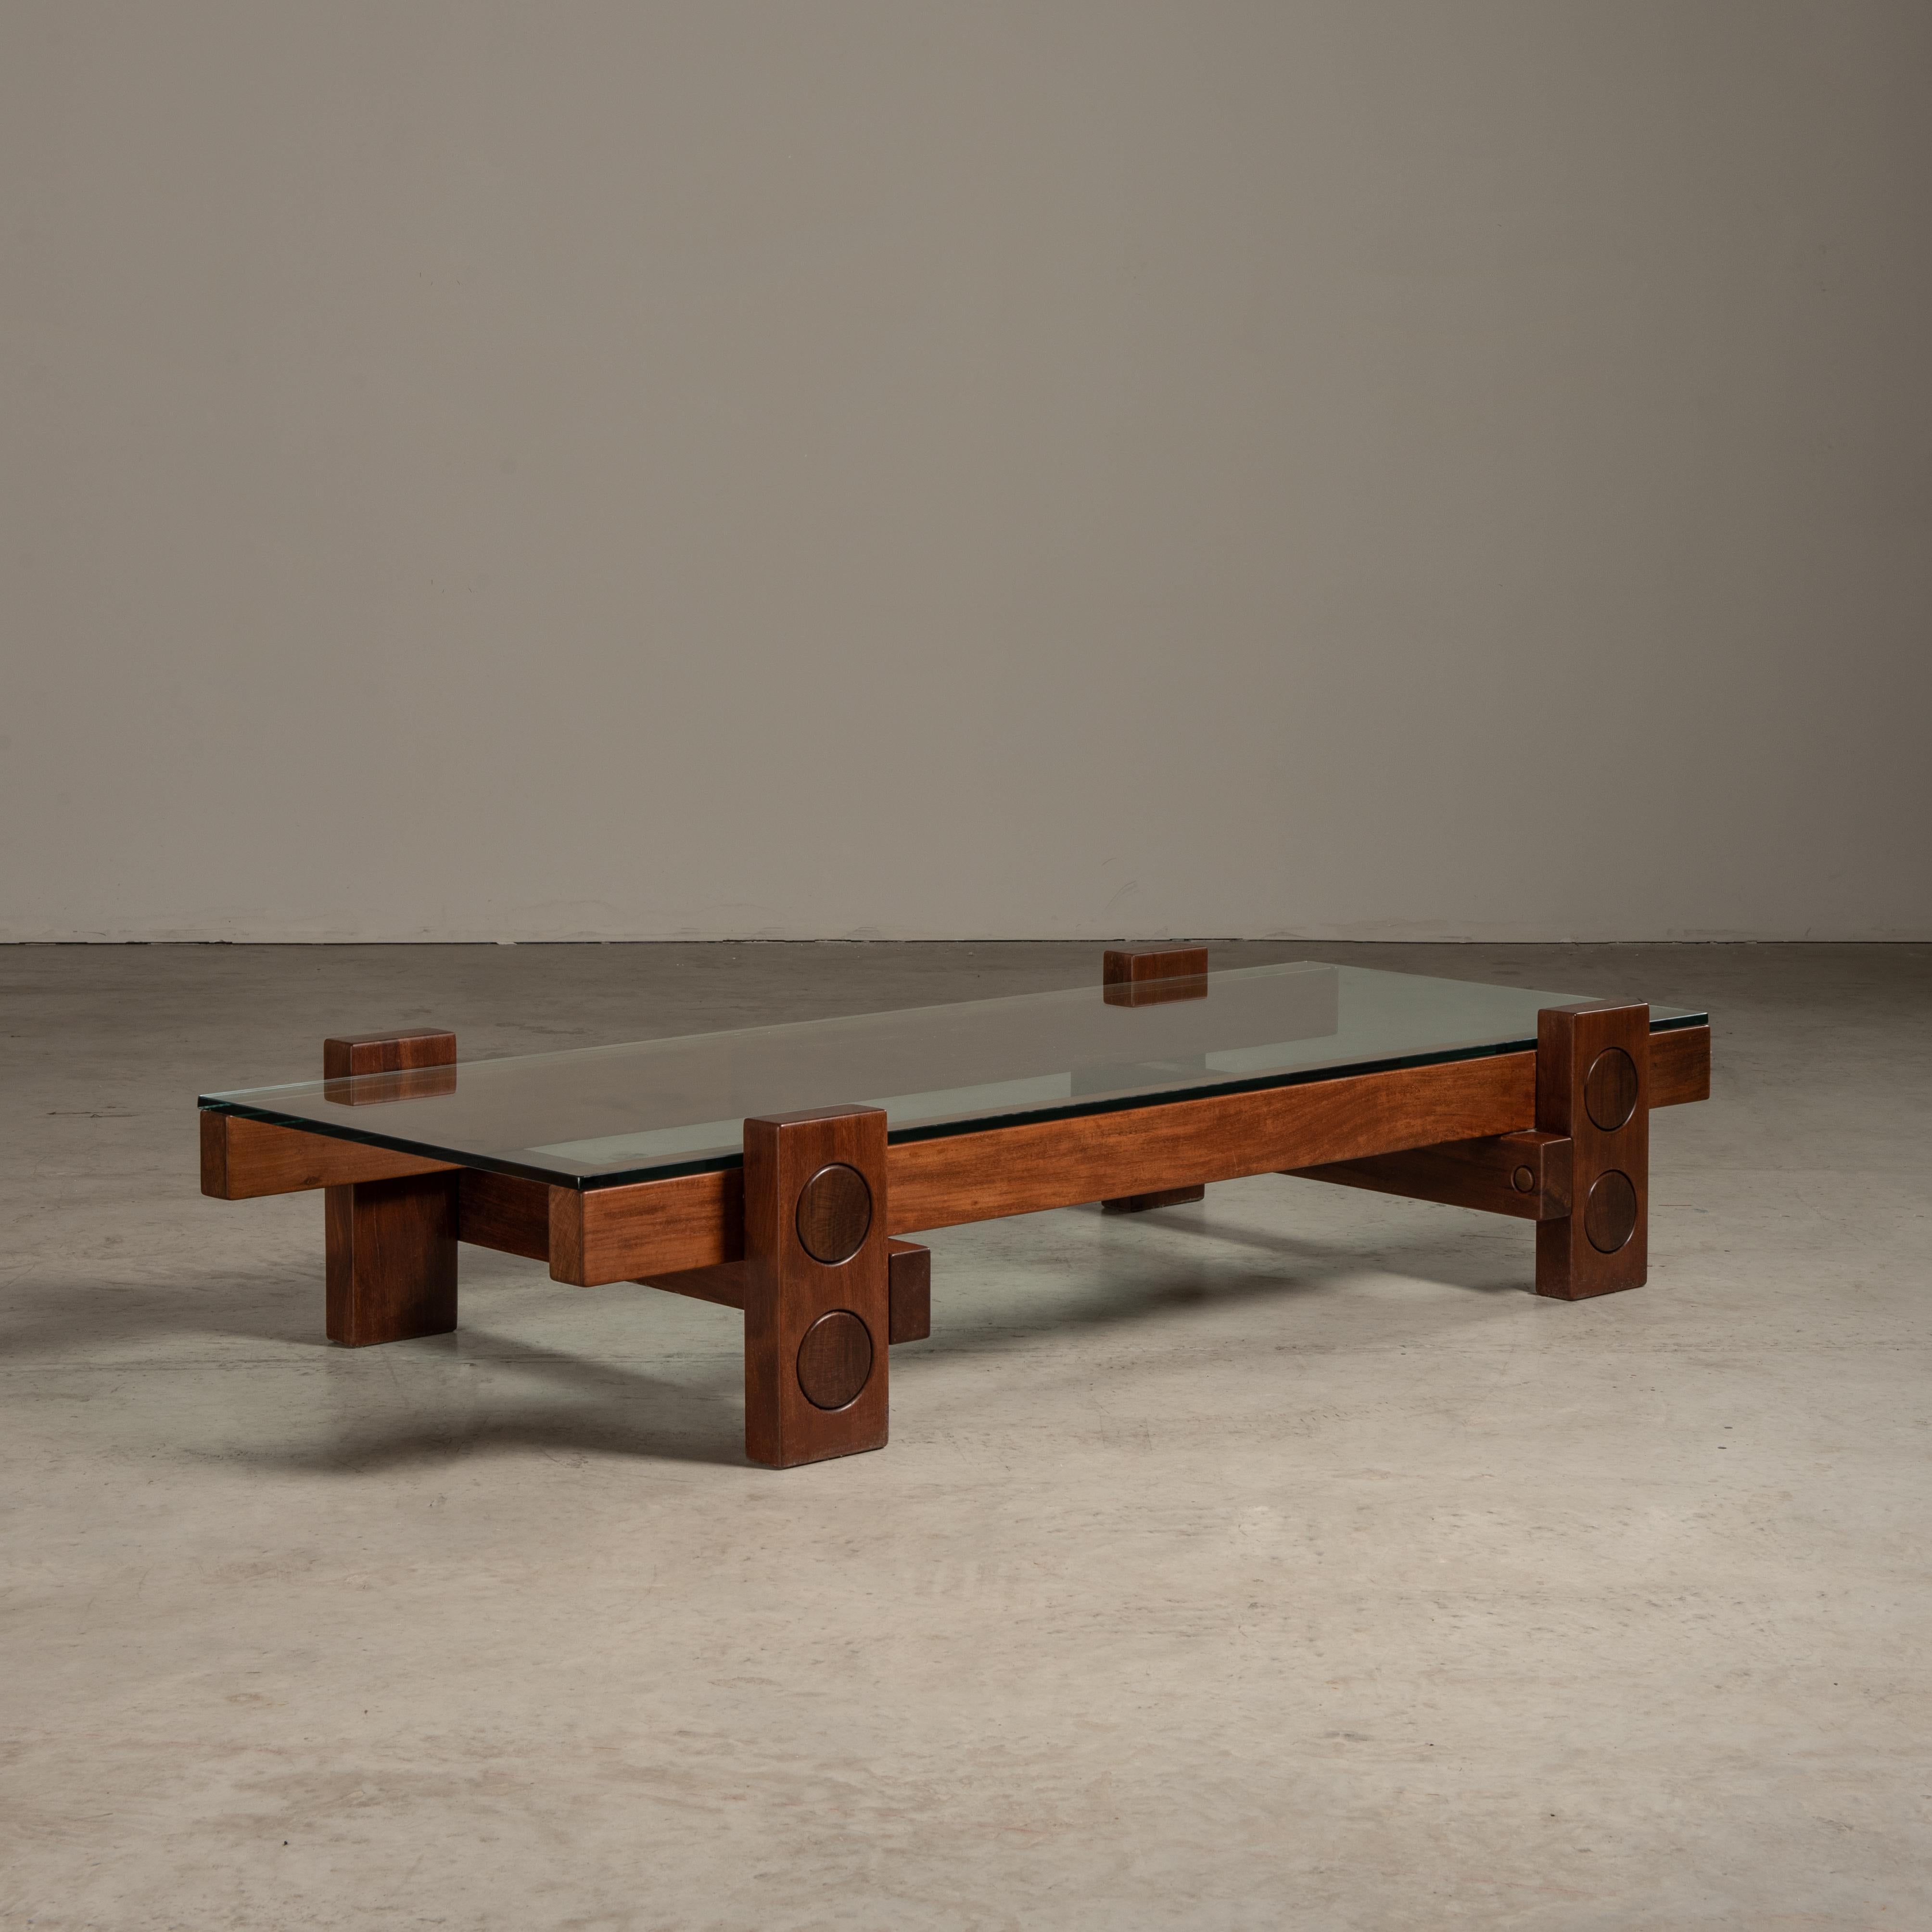 Modern 'PC' Center Table in Solid Wood, Zanini de Zanine, Brazilian Contemporary Design For Sale